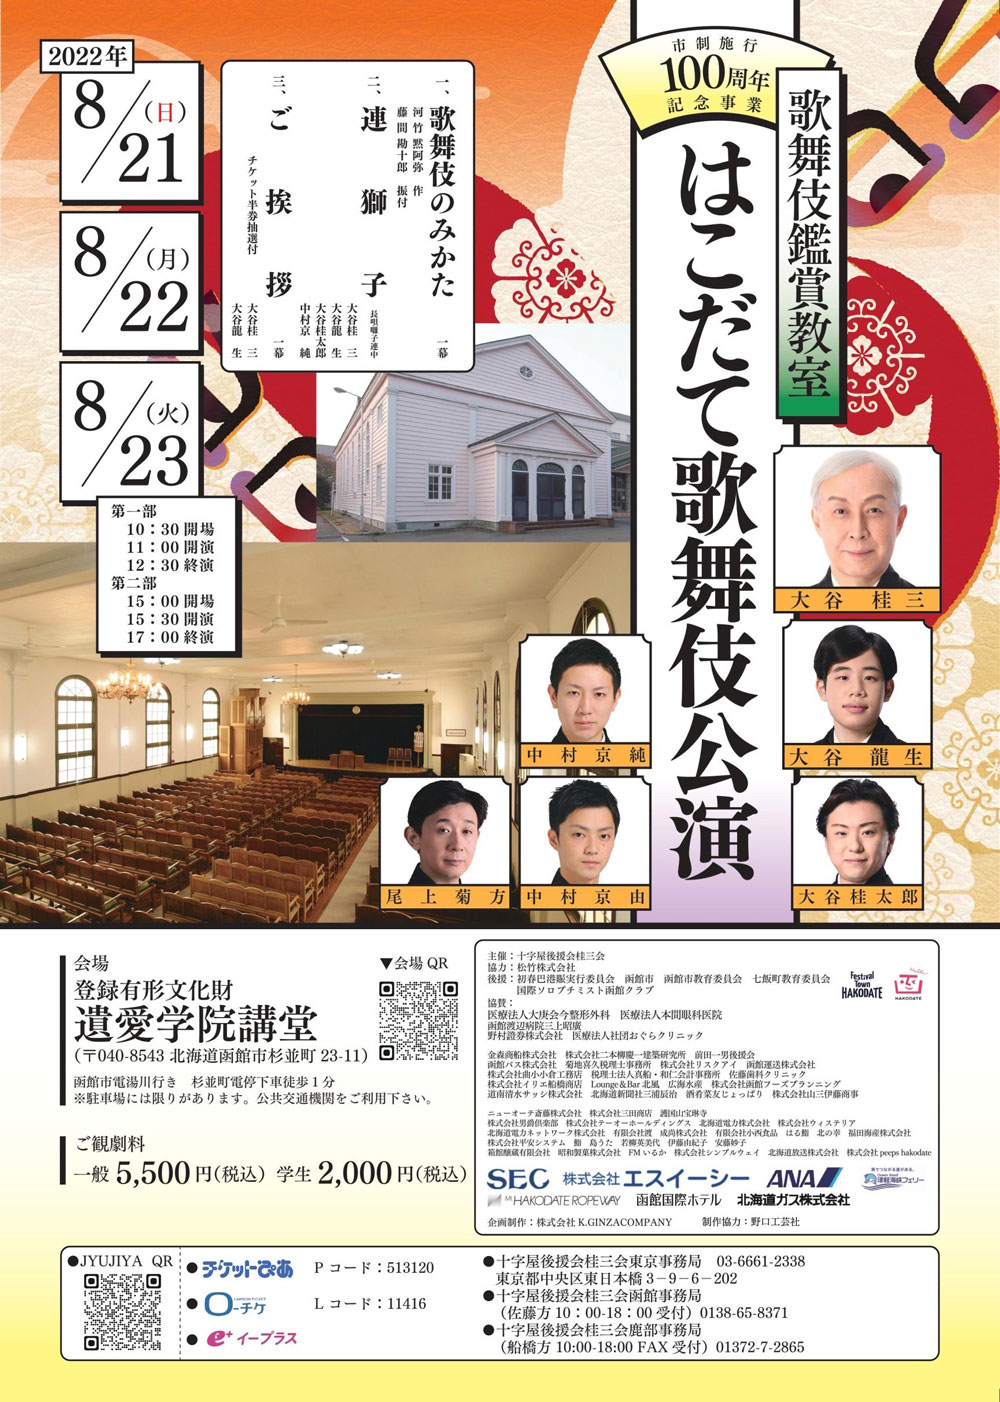 「旧函館区公会堂 はこだて歌舞伎100周年セレモニー公演」「歌舞伎鑑賞教室 はこだて歌舞伎公演」のお知らせ